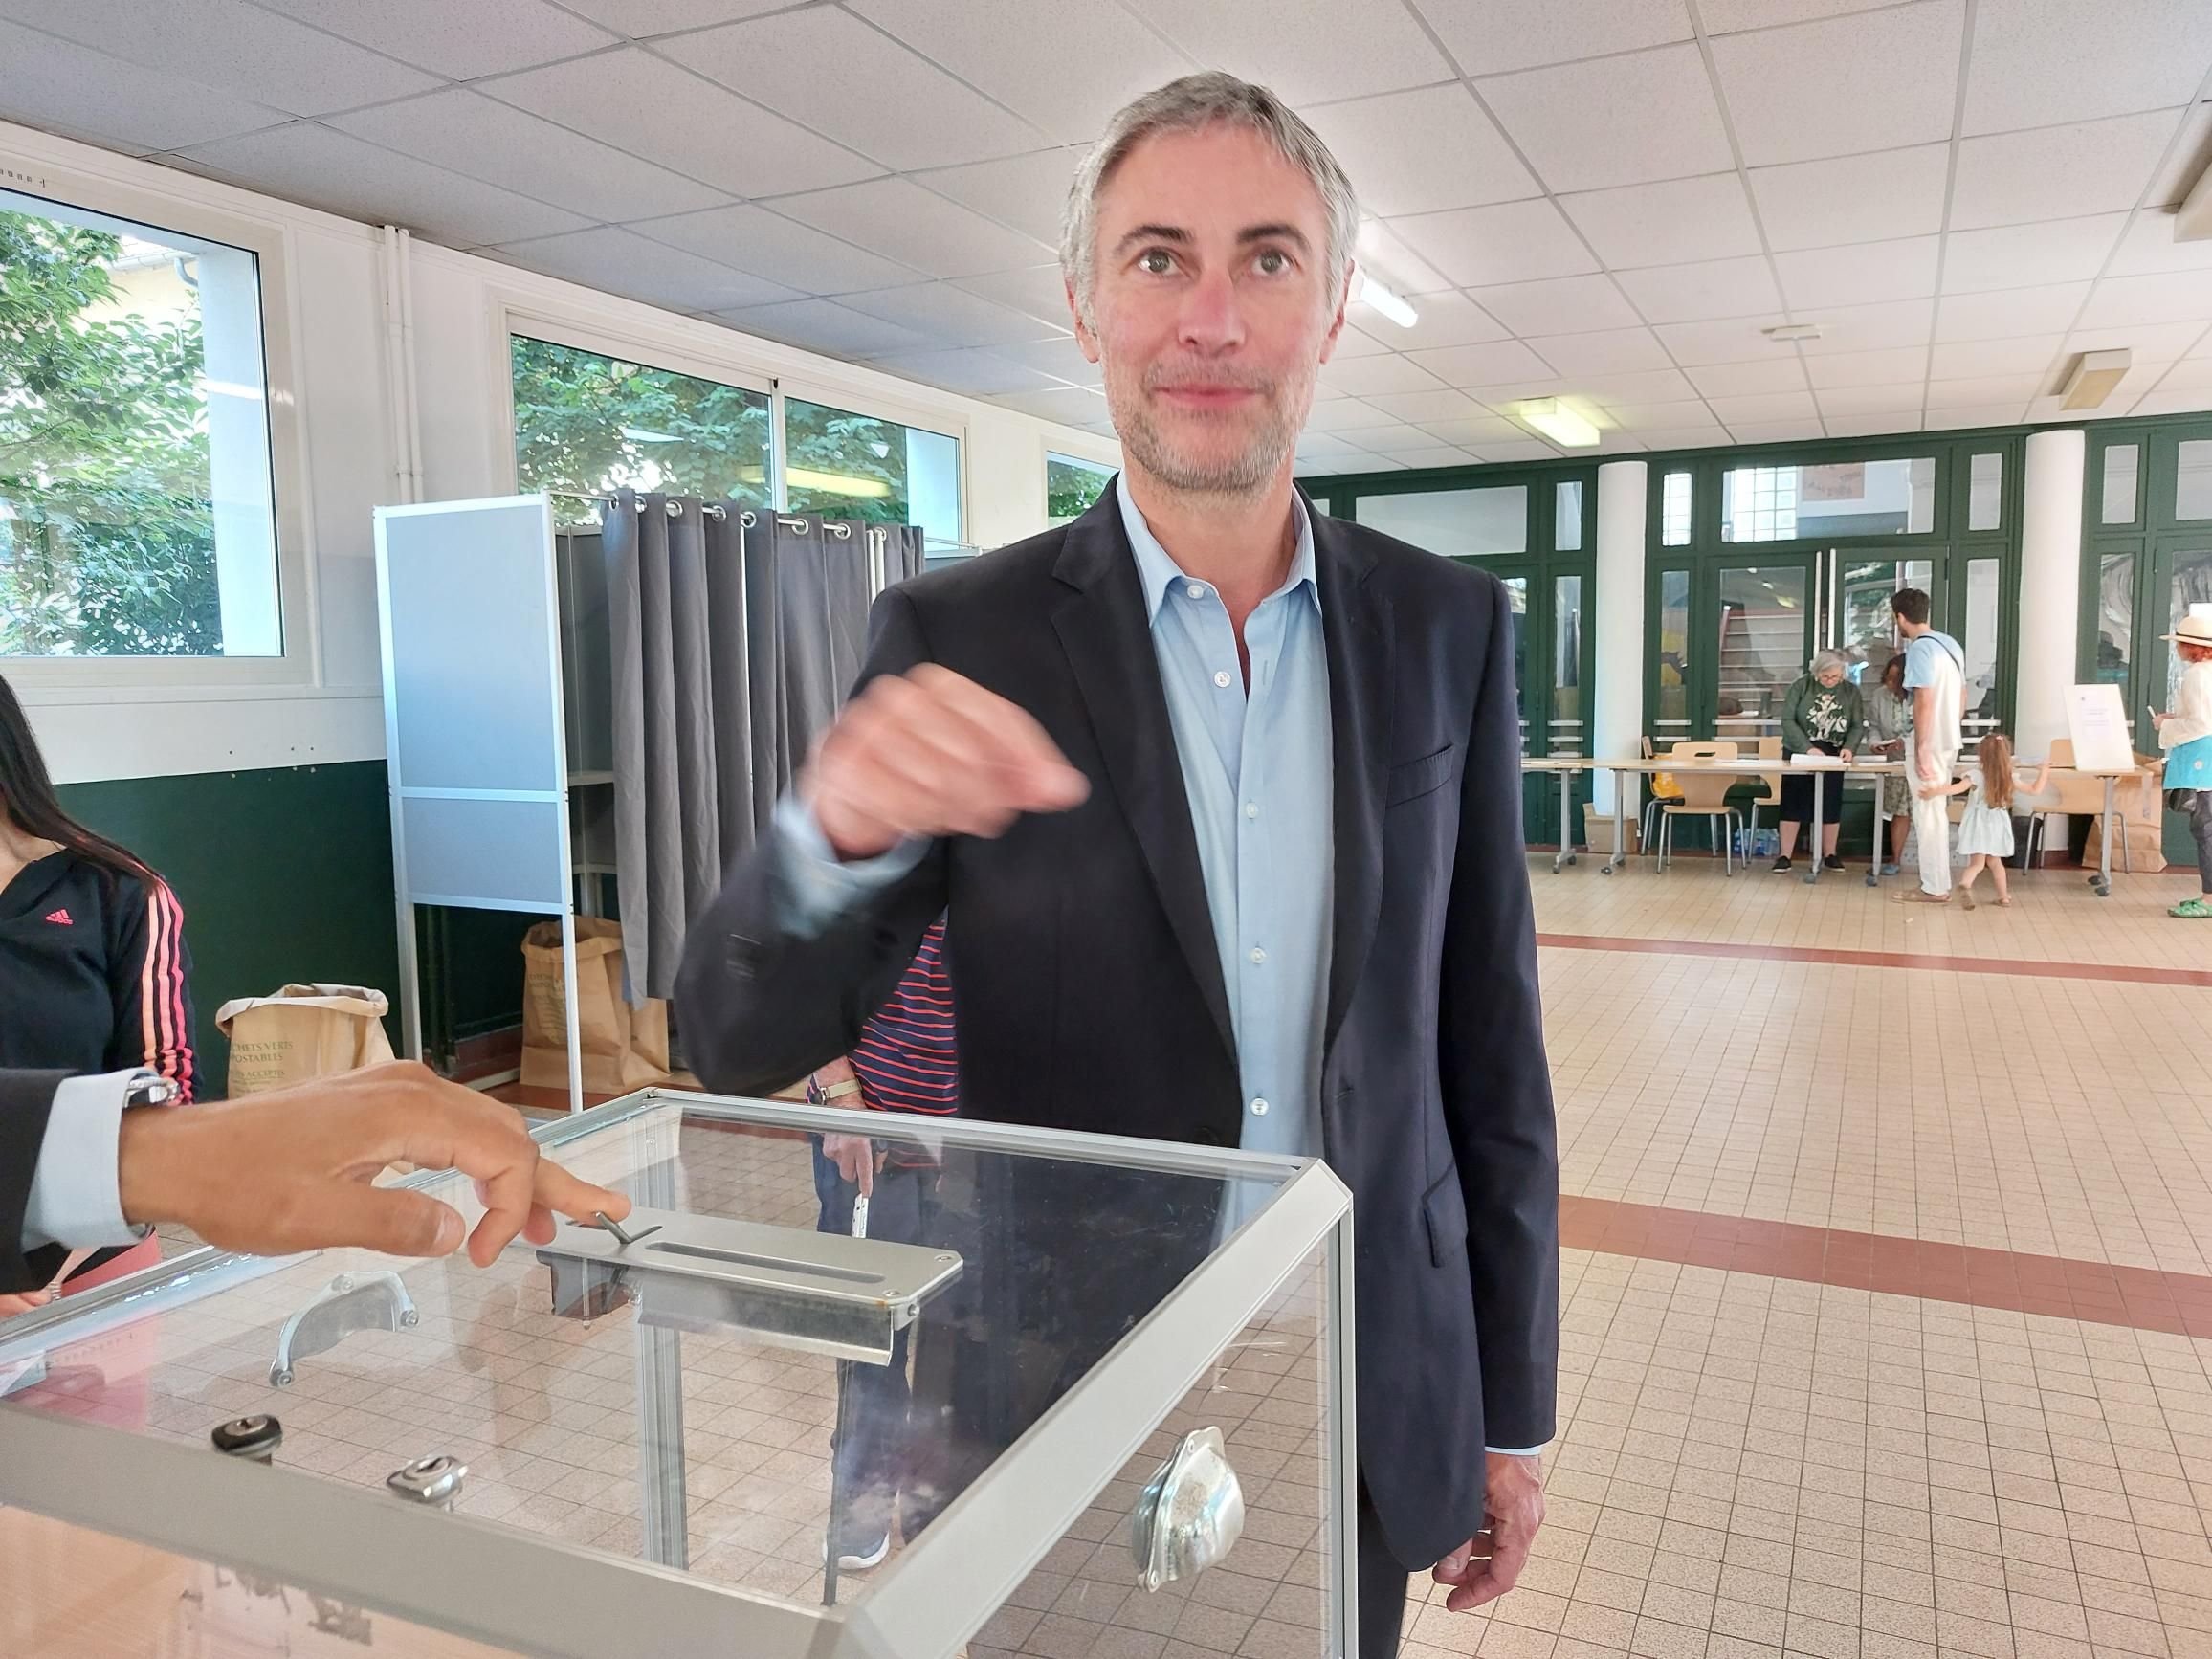 Le Raincy (Seine-Saint-Denis), ce dimanche 30 juin. Le député sortant Jérôme Legavre (LFI) est en tête avec 45 % des suffrages exprimés, devant le candidat du RN Jean-François Périer. LP/Nathalie Revenu.